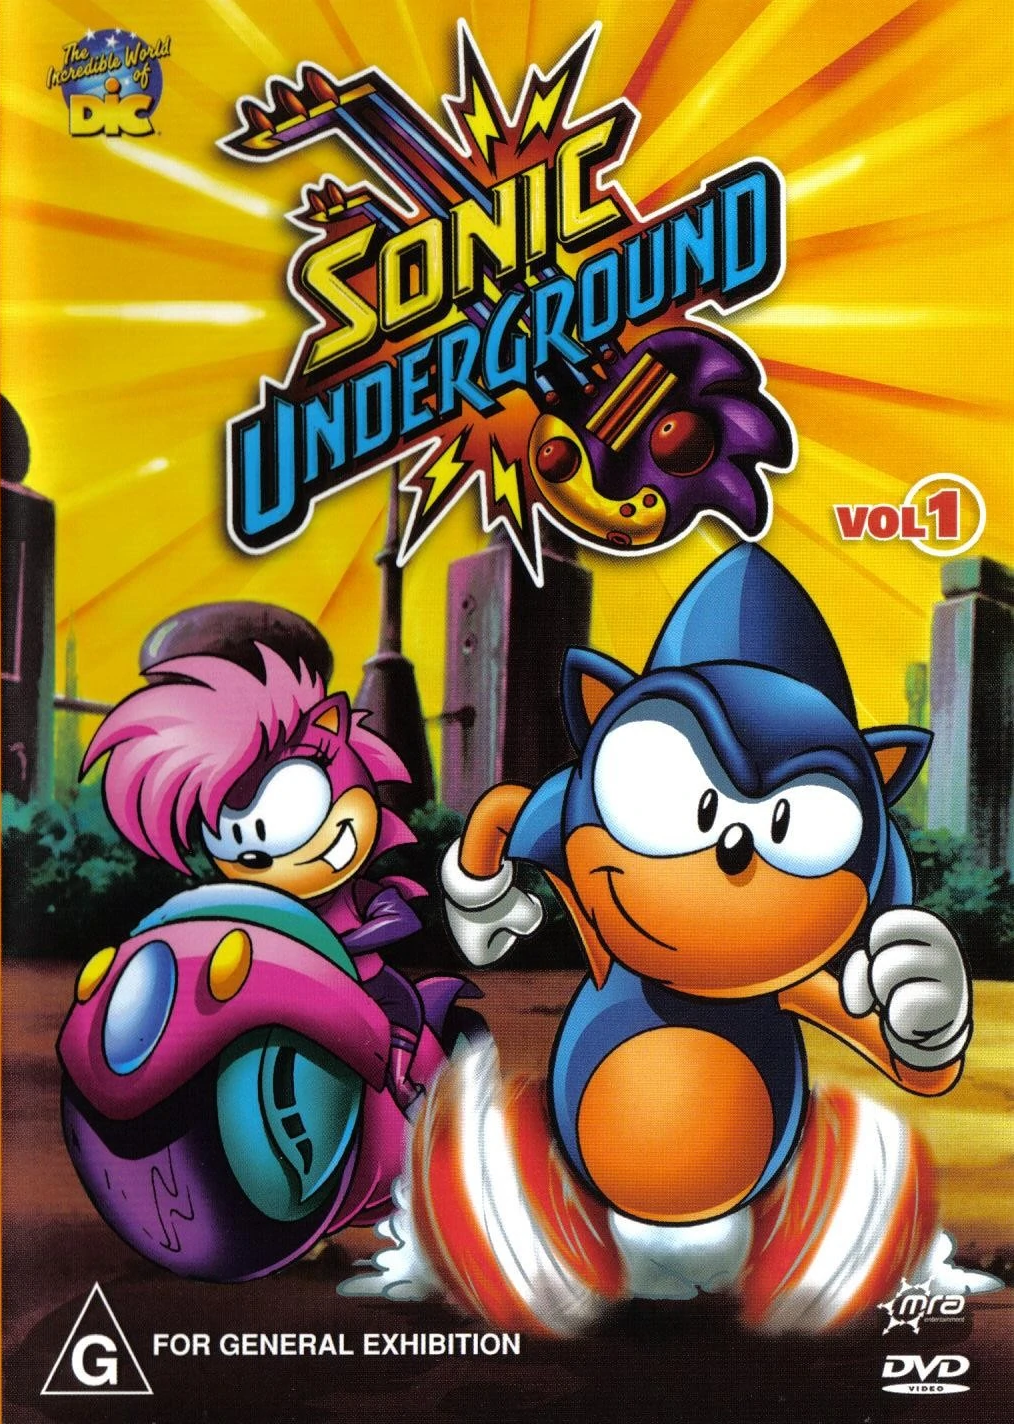 Sonic Underground Volume 1 Sonic News Network Fandom